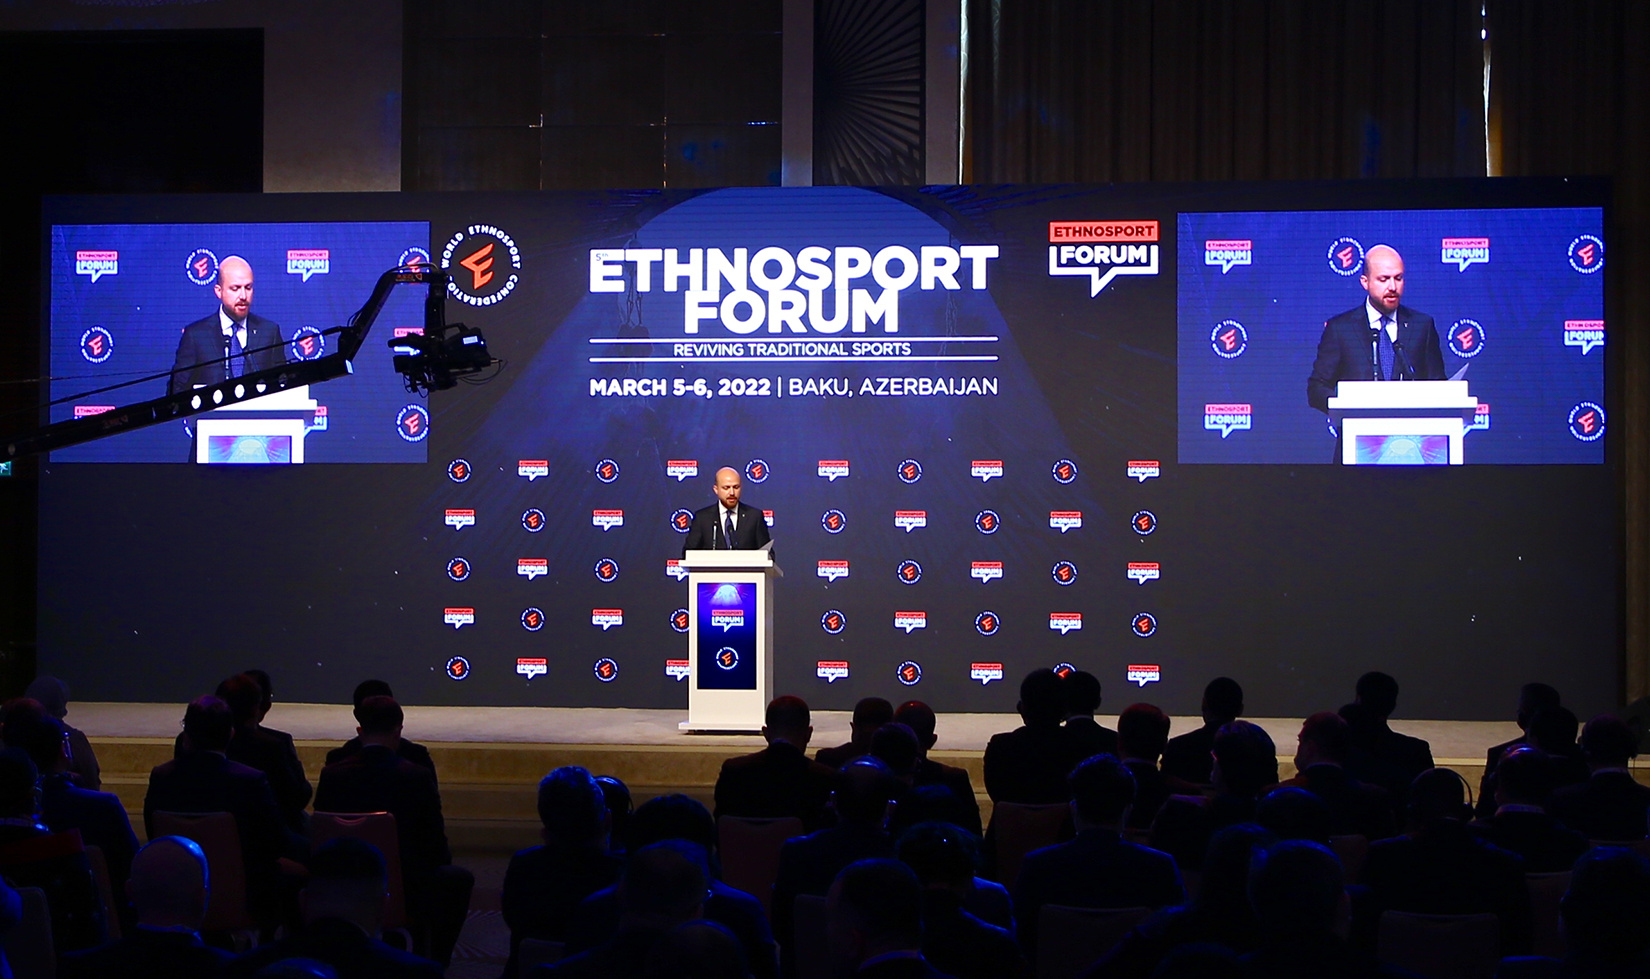 5th Ethnosport Forum Held in Baku